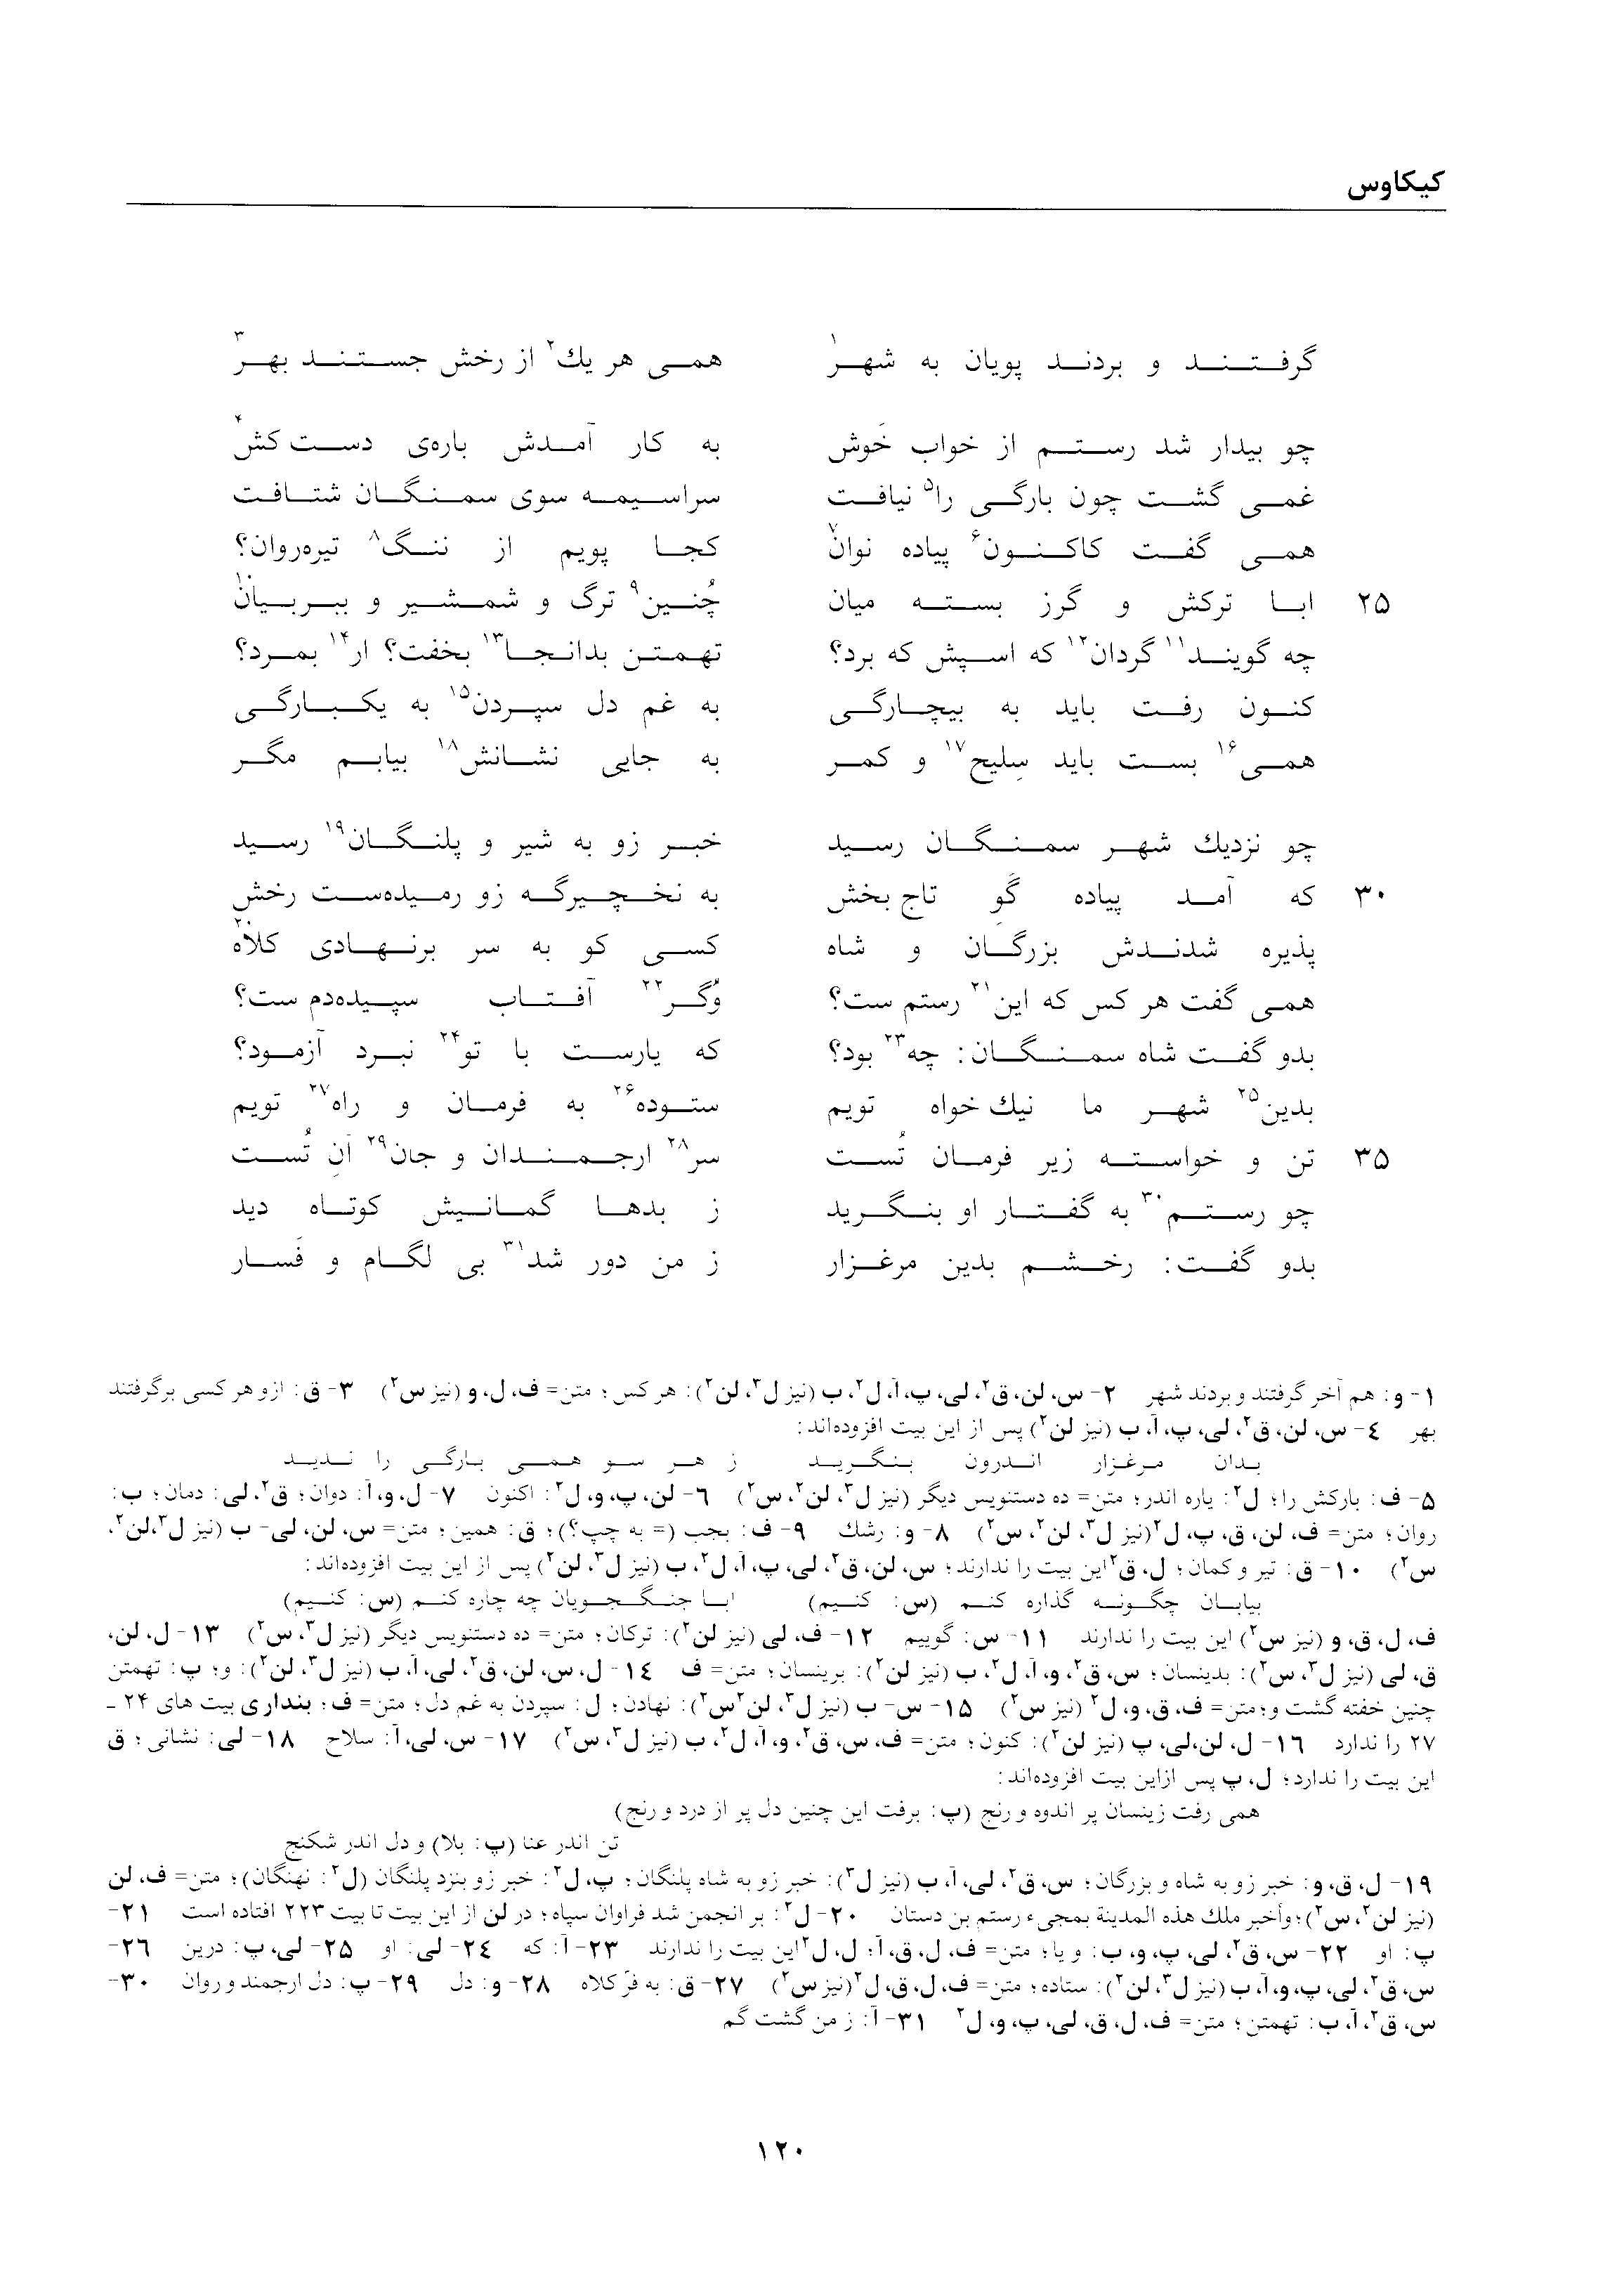 vol. 2, p. 120